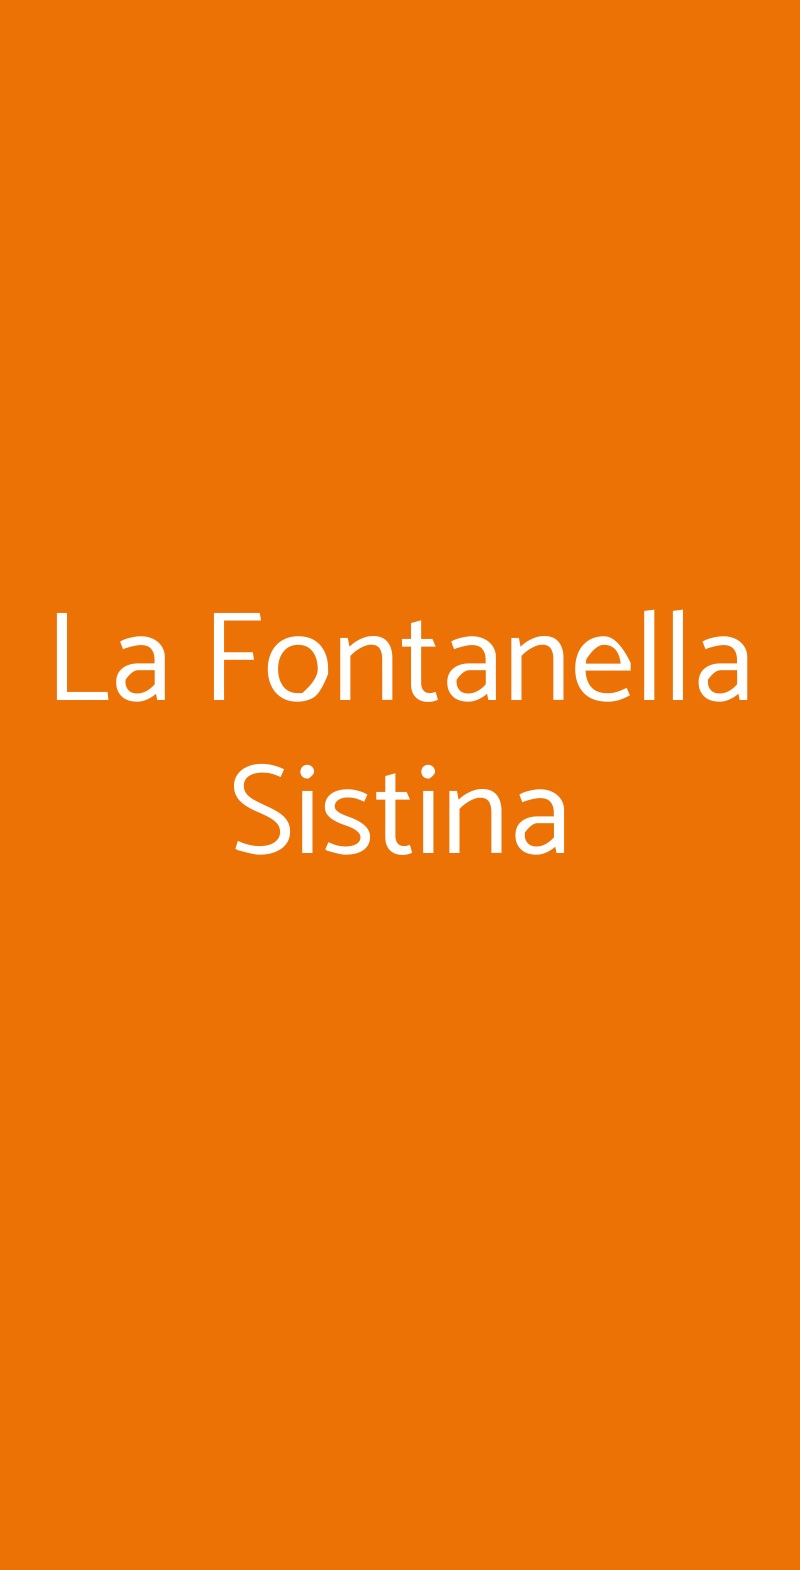 La Fontanella Sistina Roma menù 1 pagina